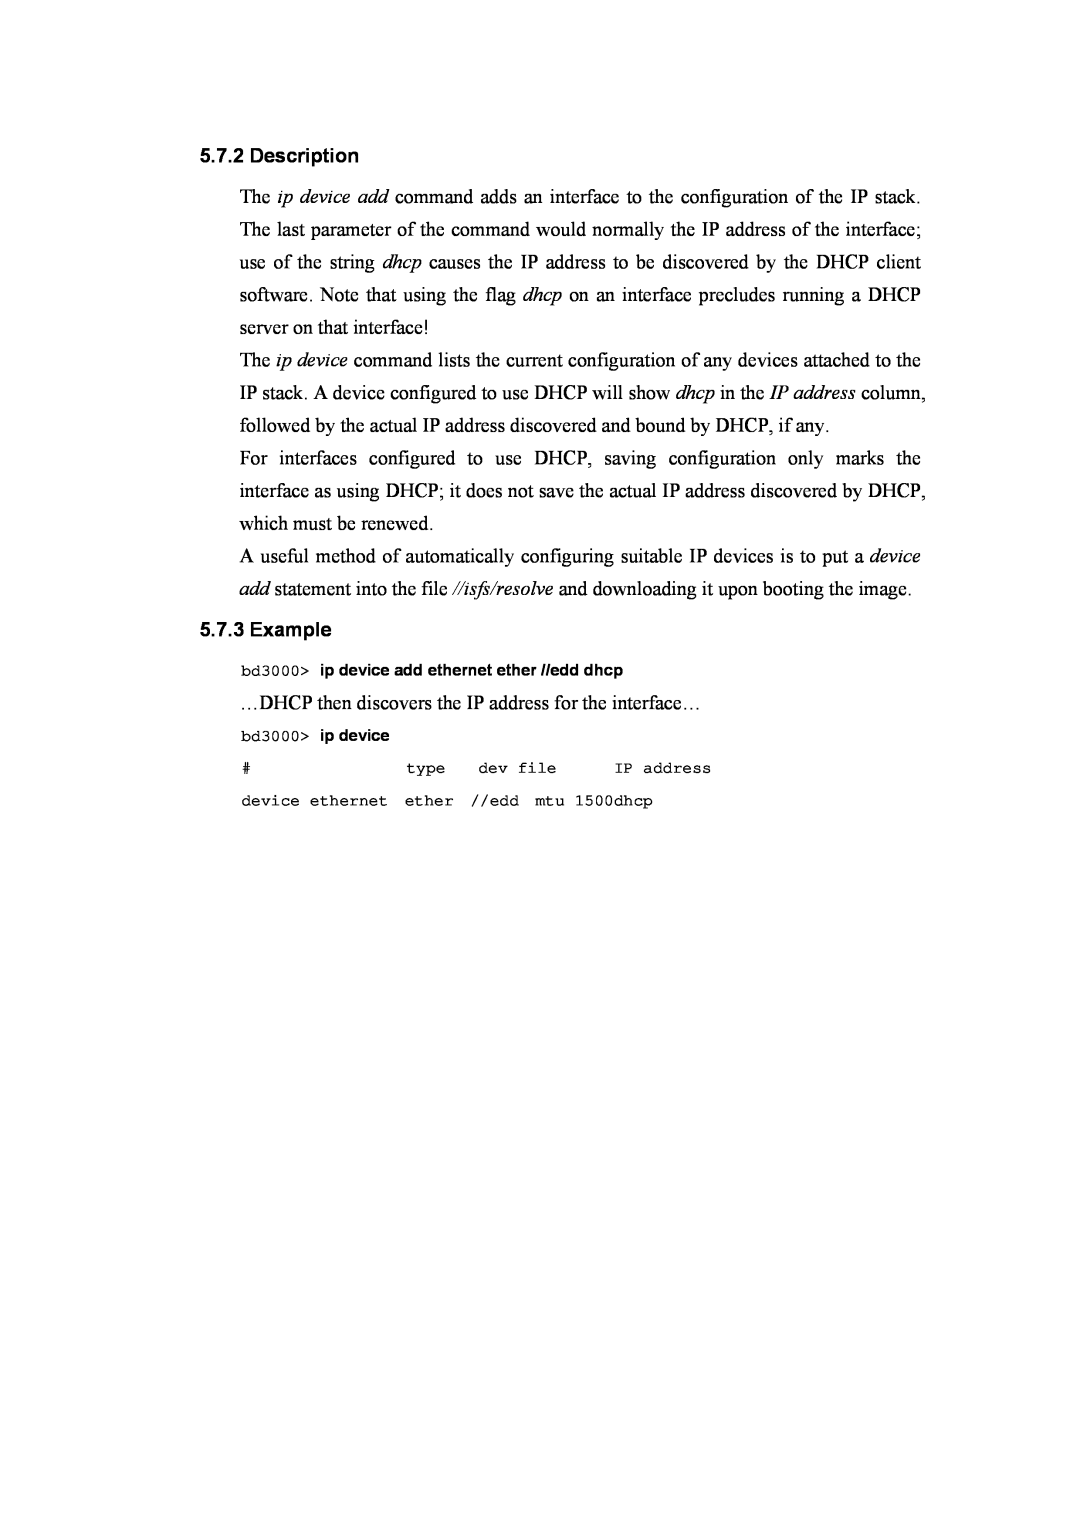 Atlantis Land A02-RA(Atmos)_ME01 manual Description, Example 